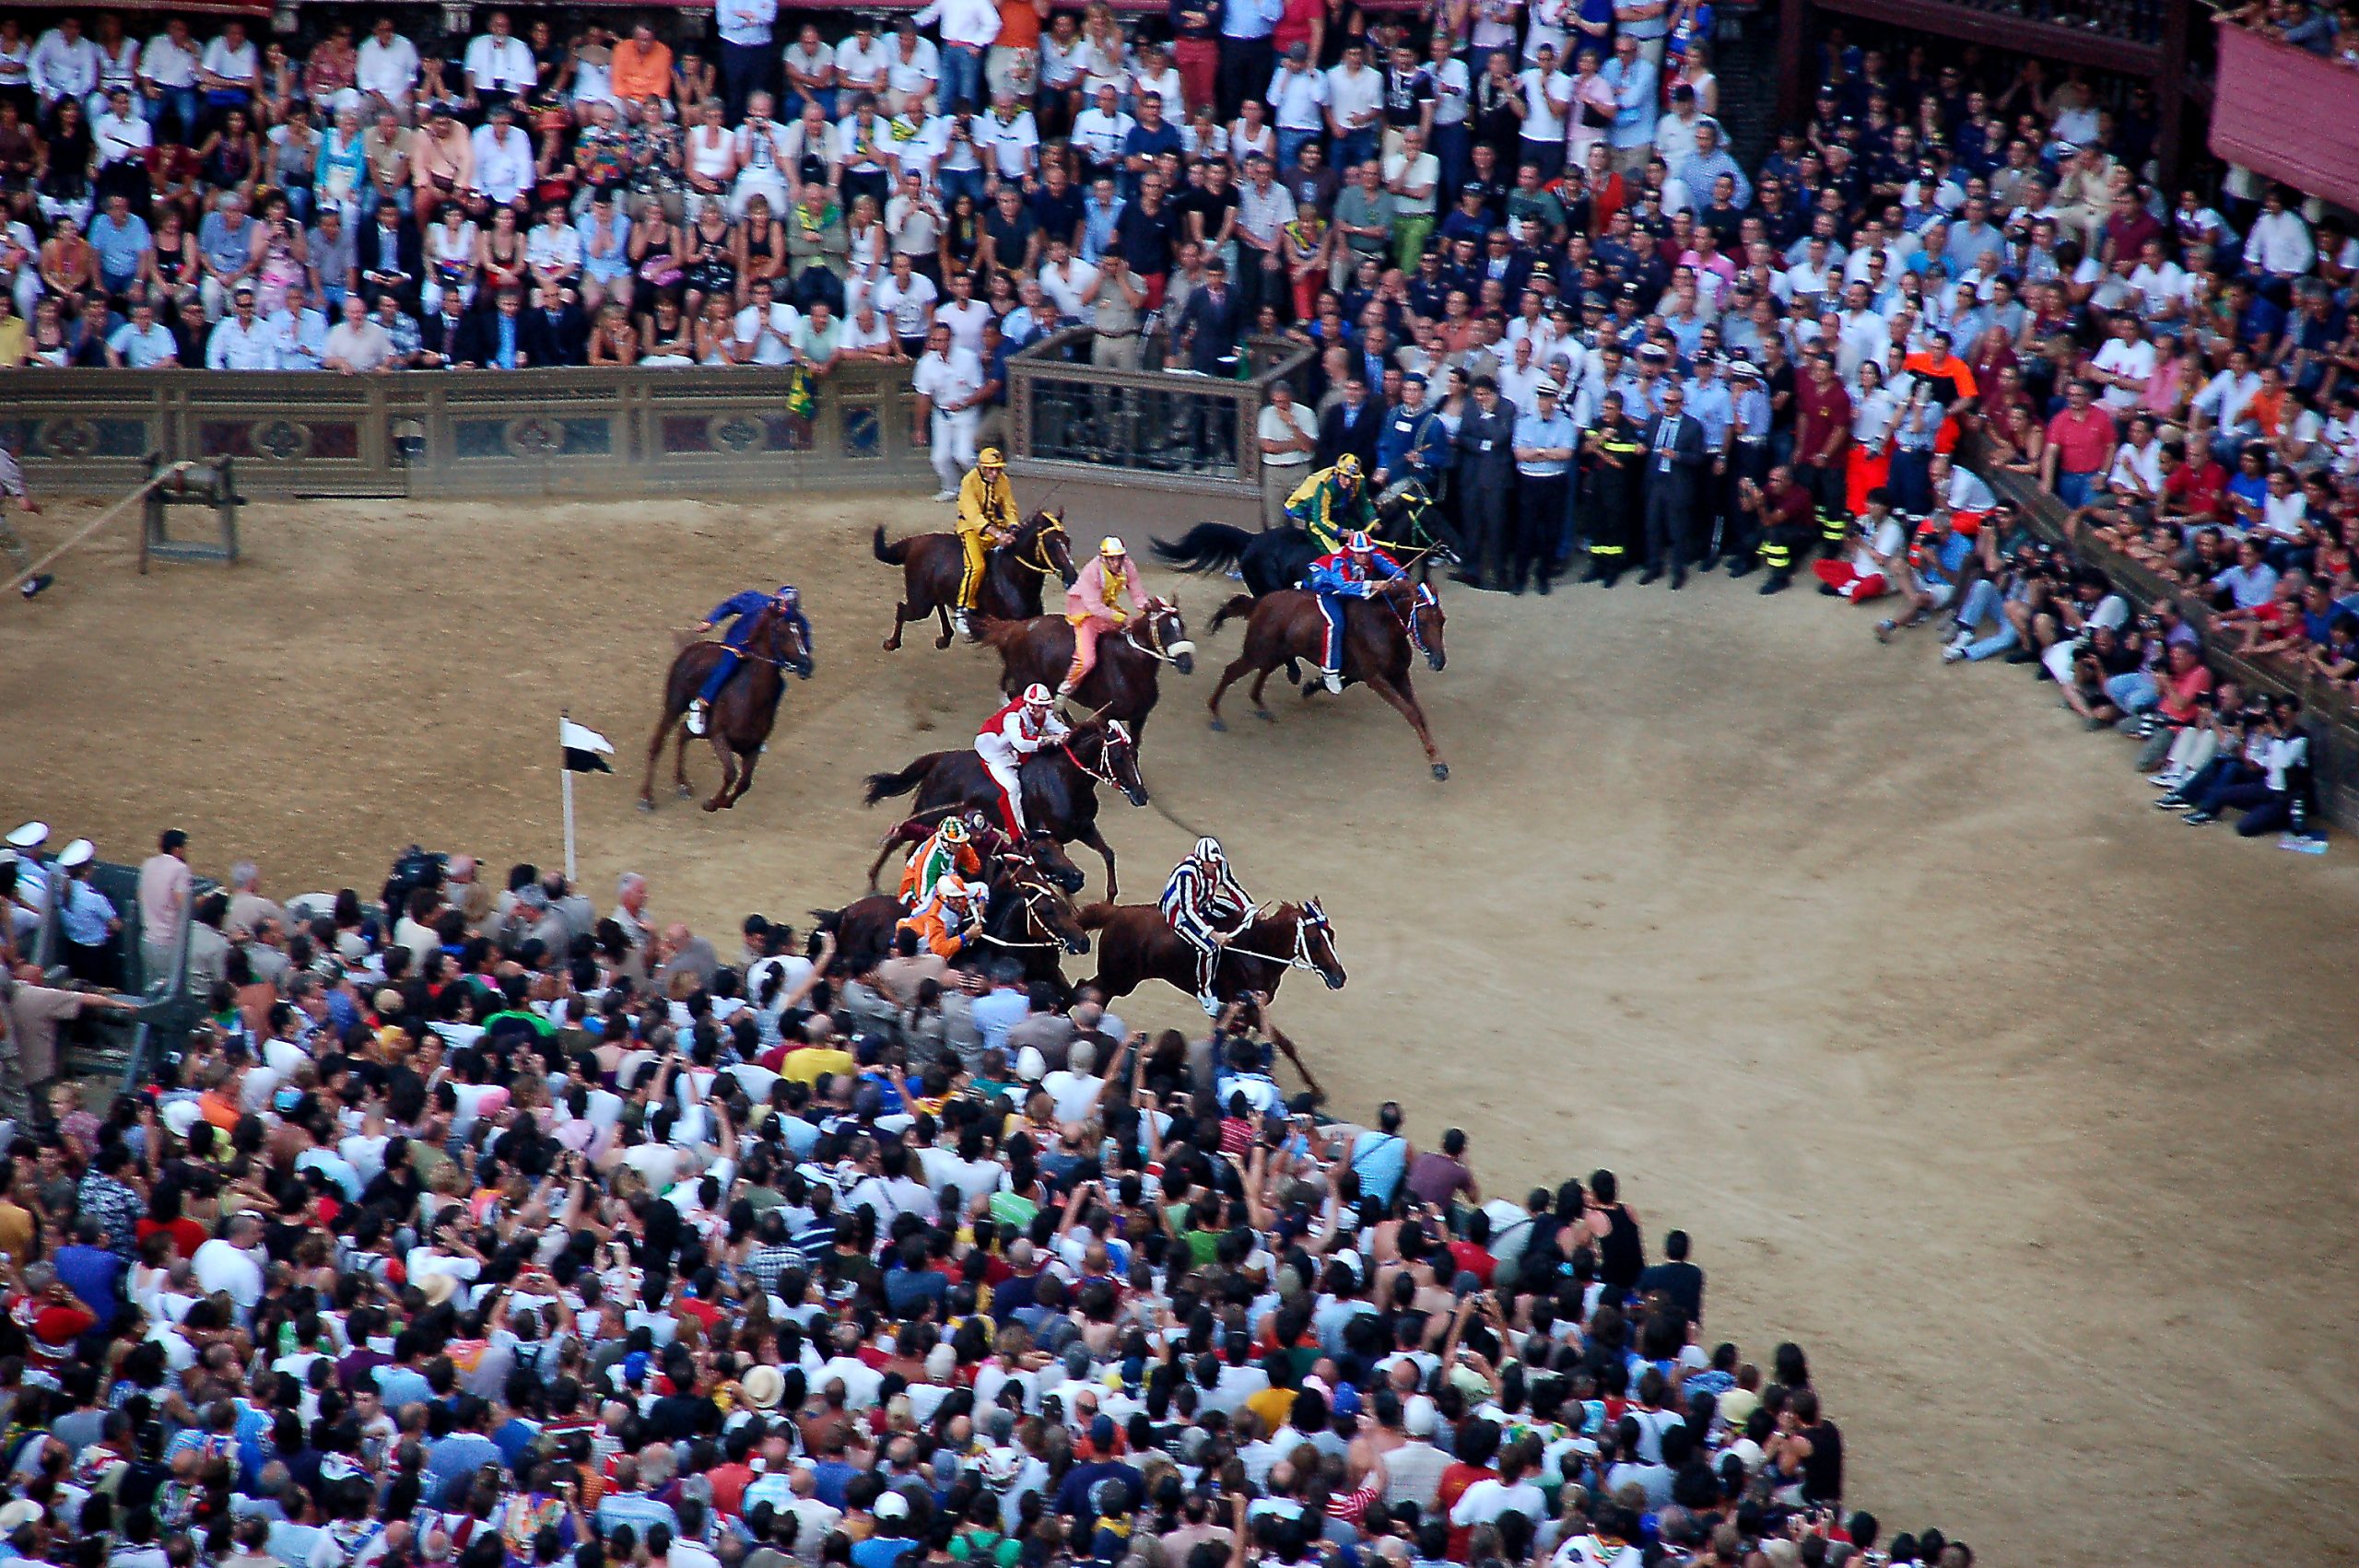 مسابقه اسب سواری، جشنواره های ایتالیا